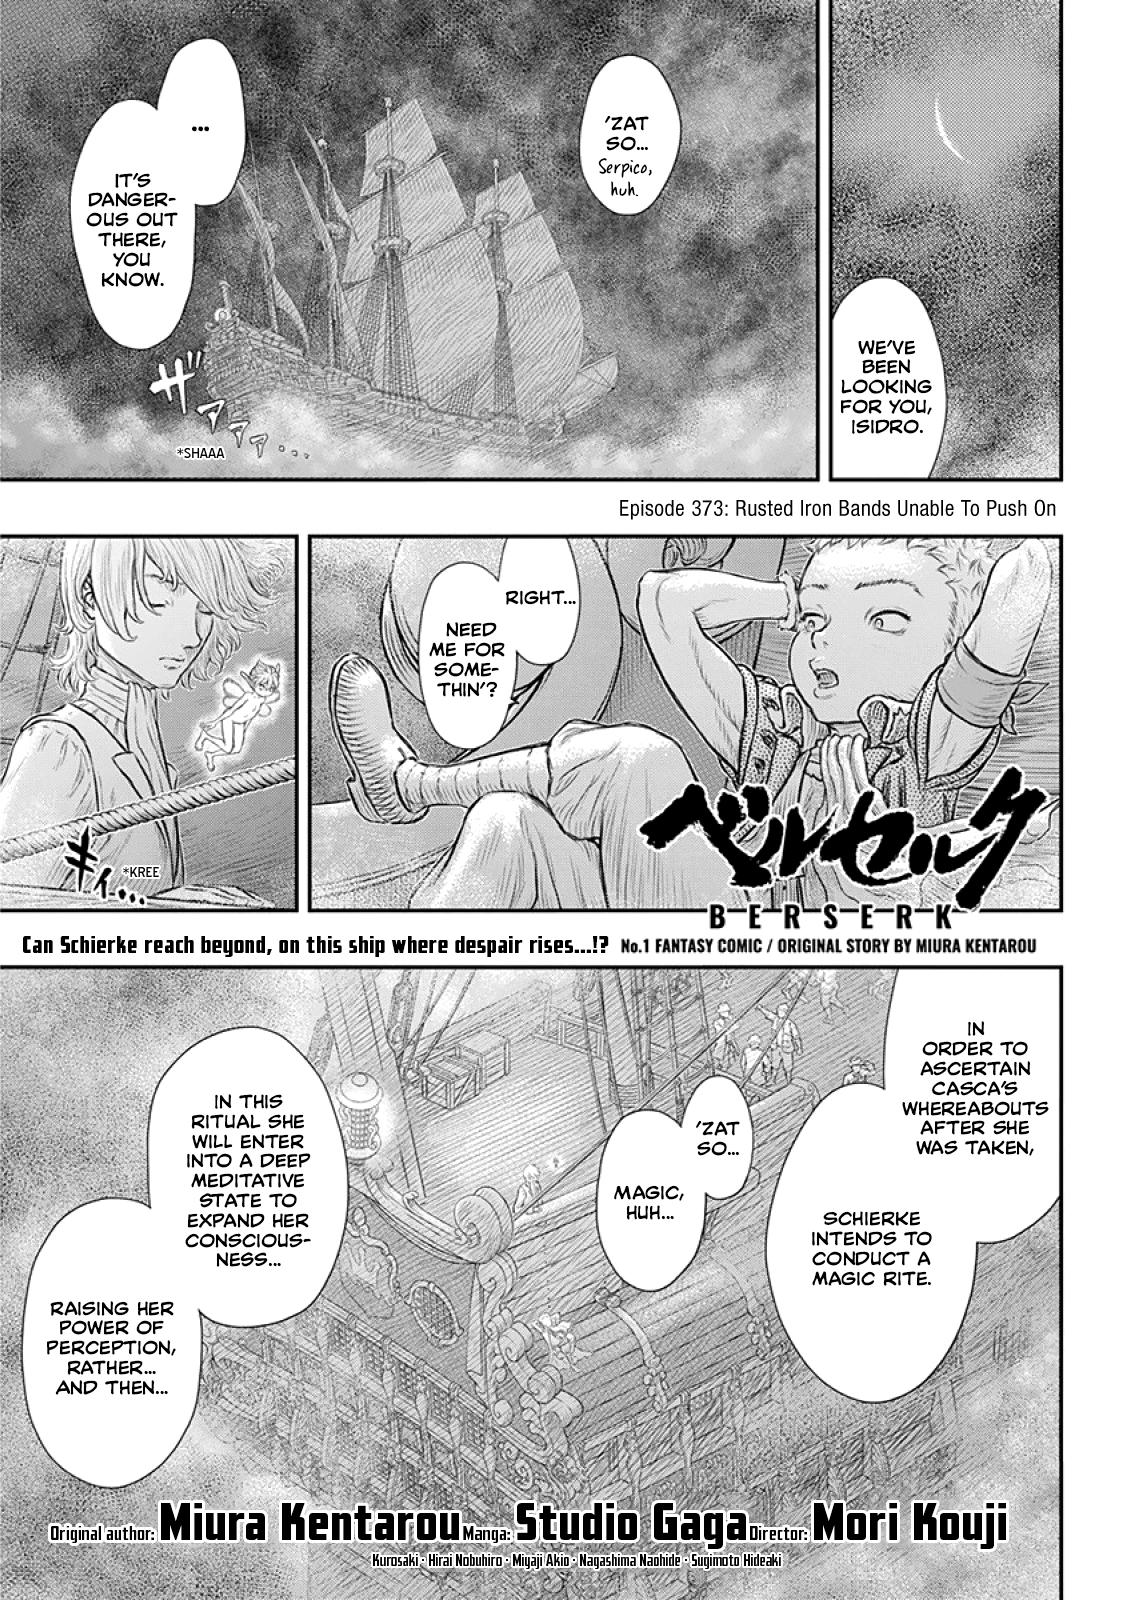 Berserk Manga Chapter 373 image 01